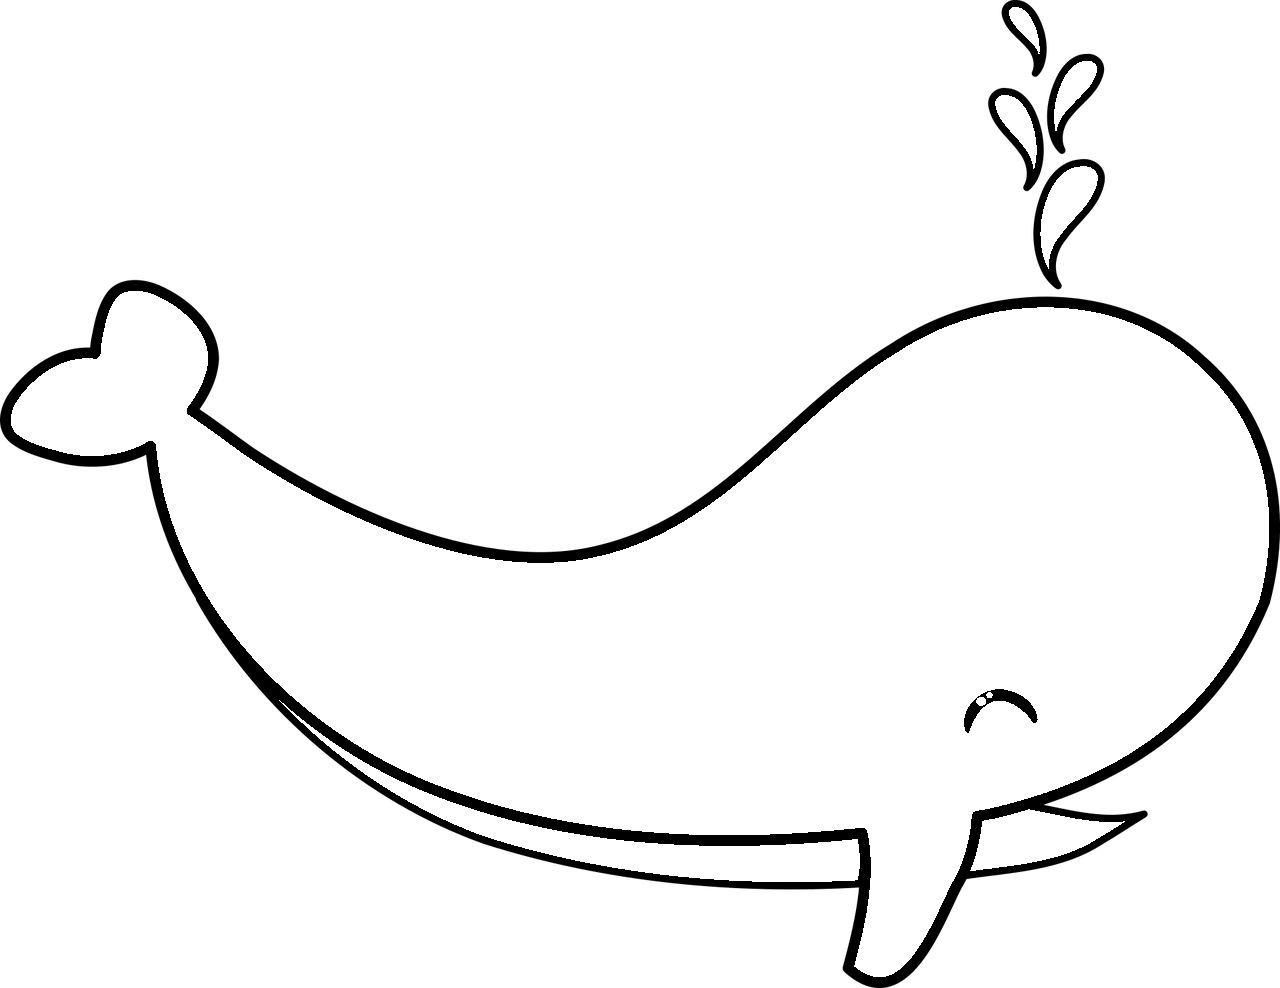 Disegno da colorare di una balena